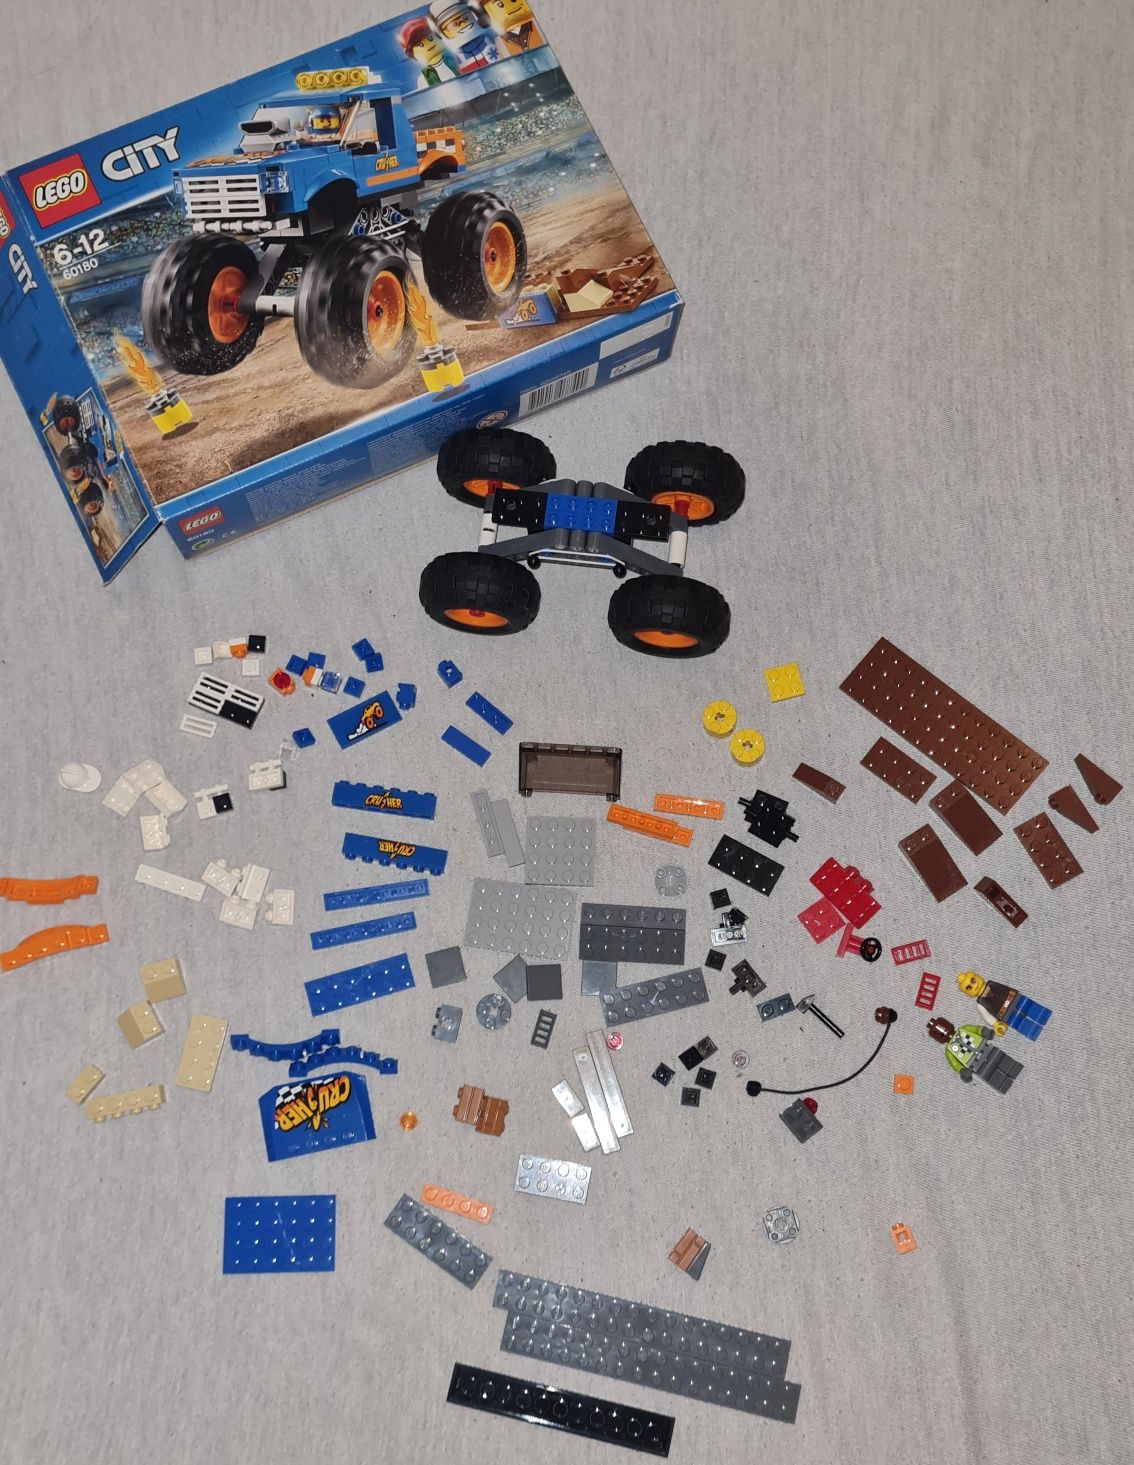 Zestaw LEGO 60180 Monster truck